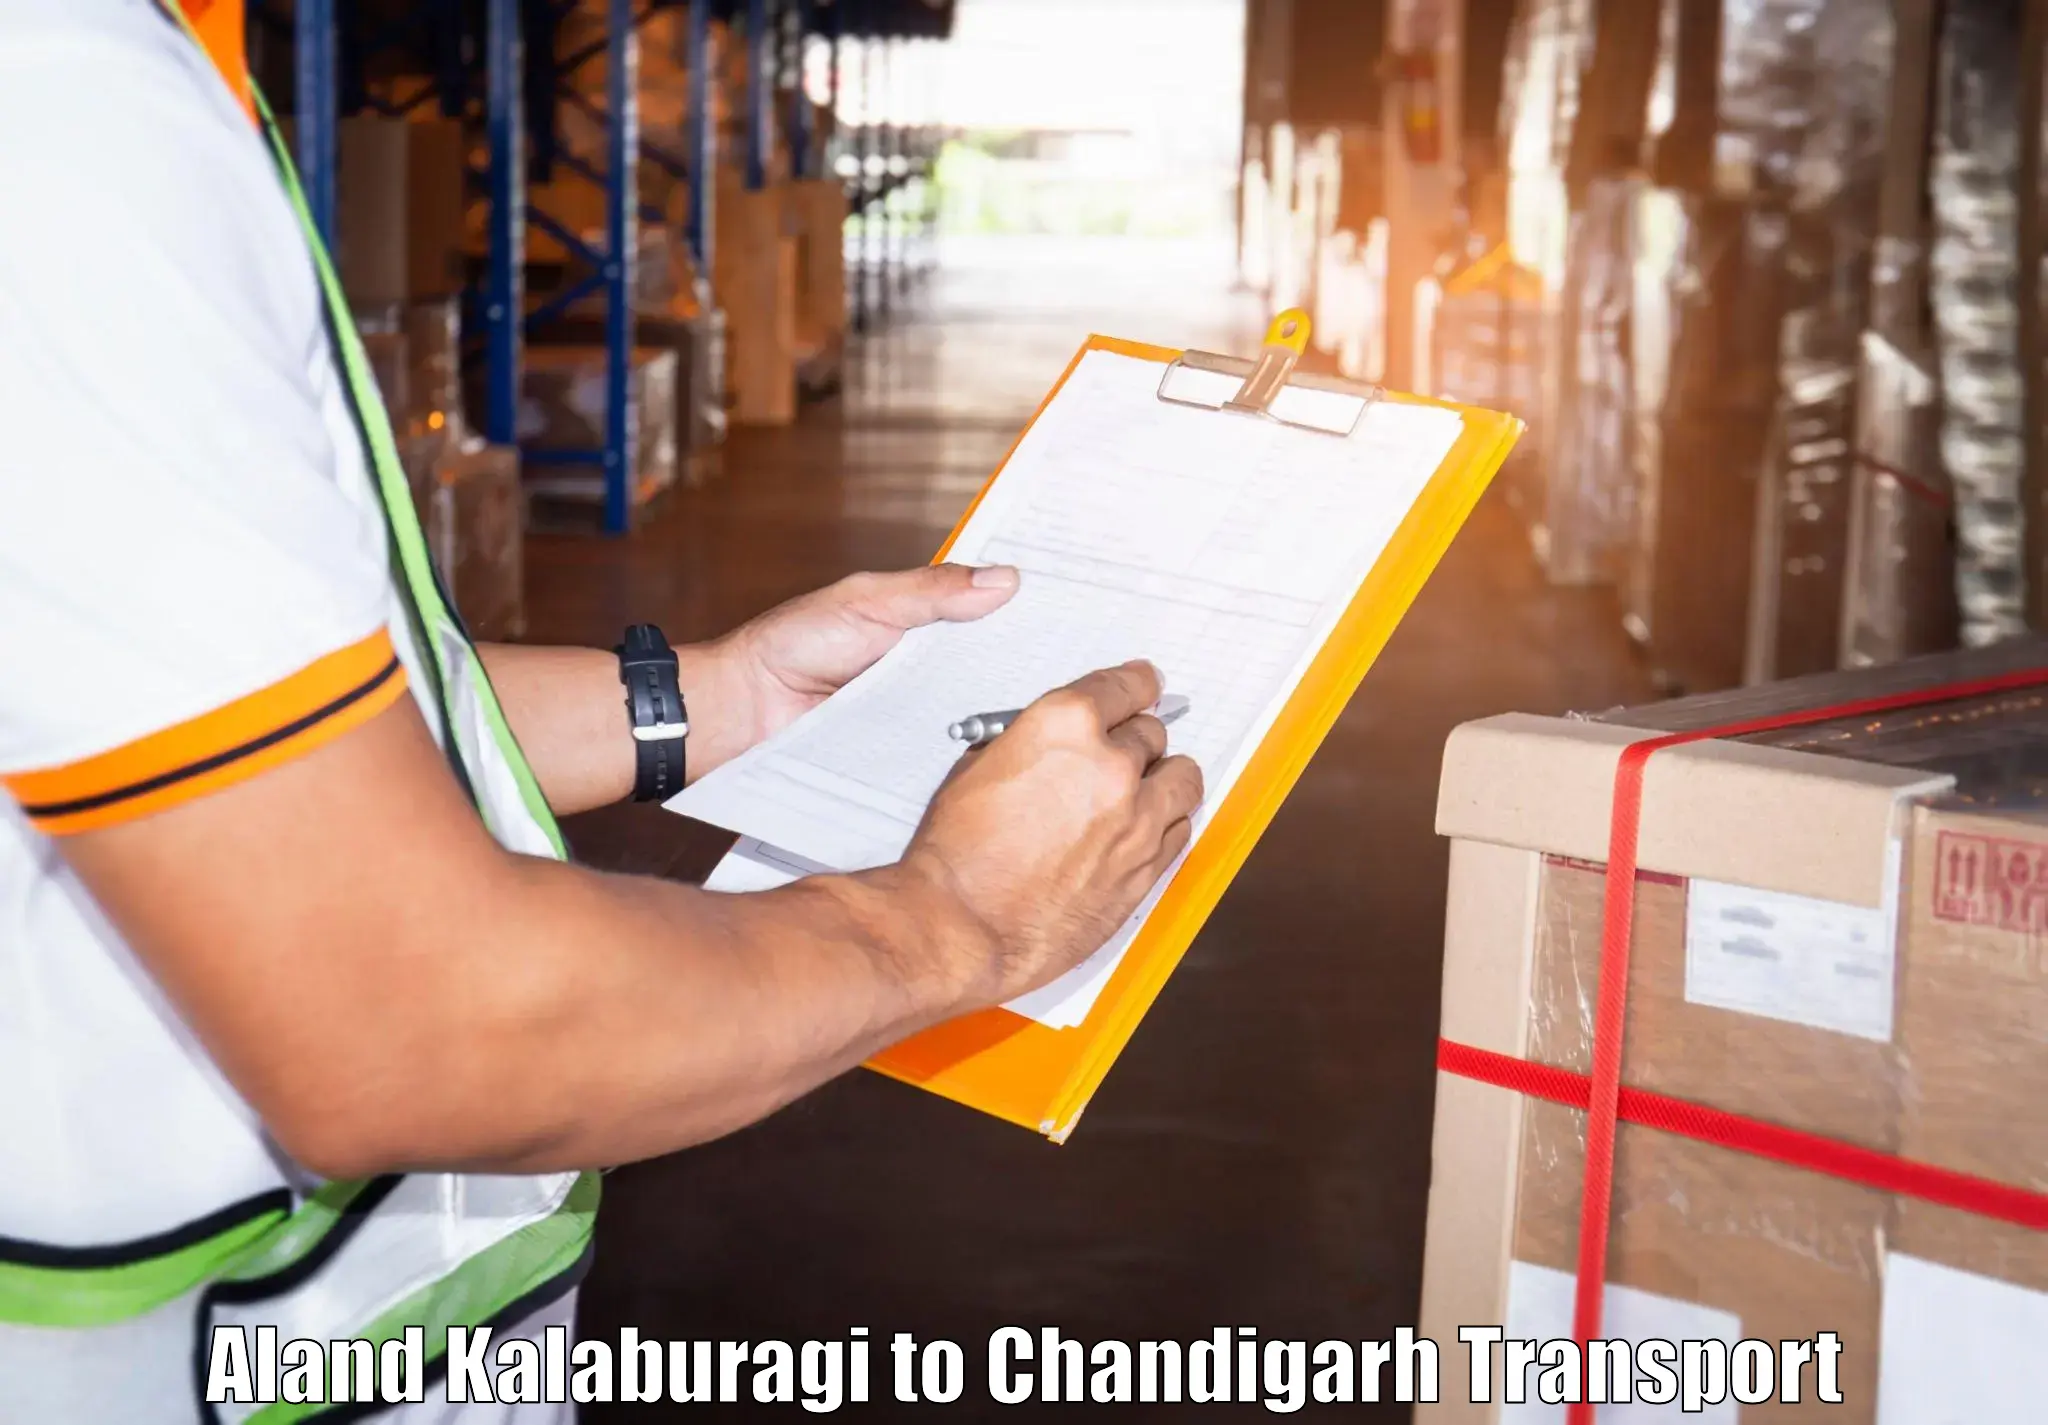 Transport in sharing Aland Kalaburagi to Chandigarh